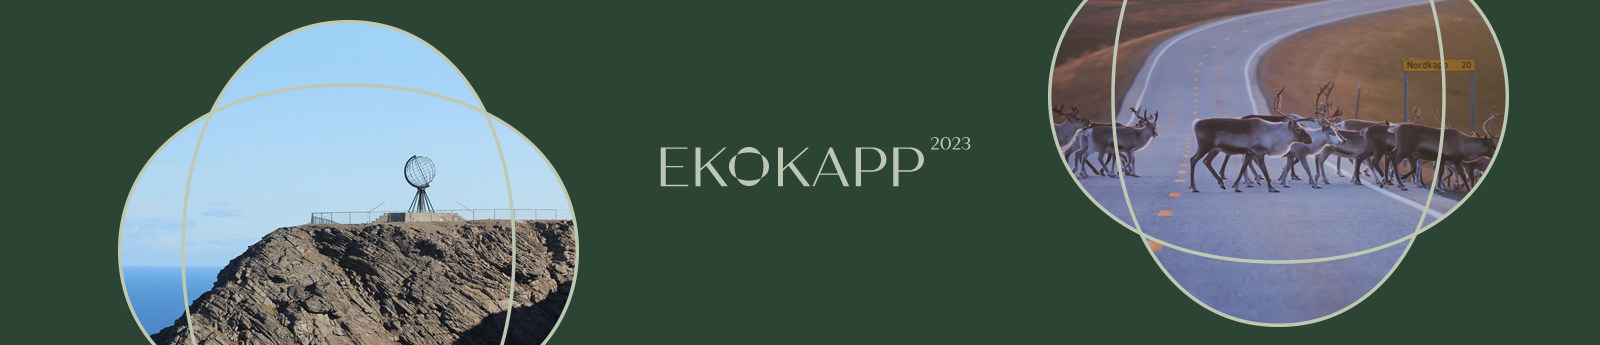 EkoKapp i zrównoważony rozwój